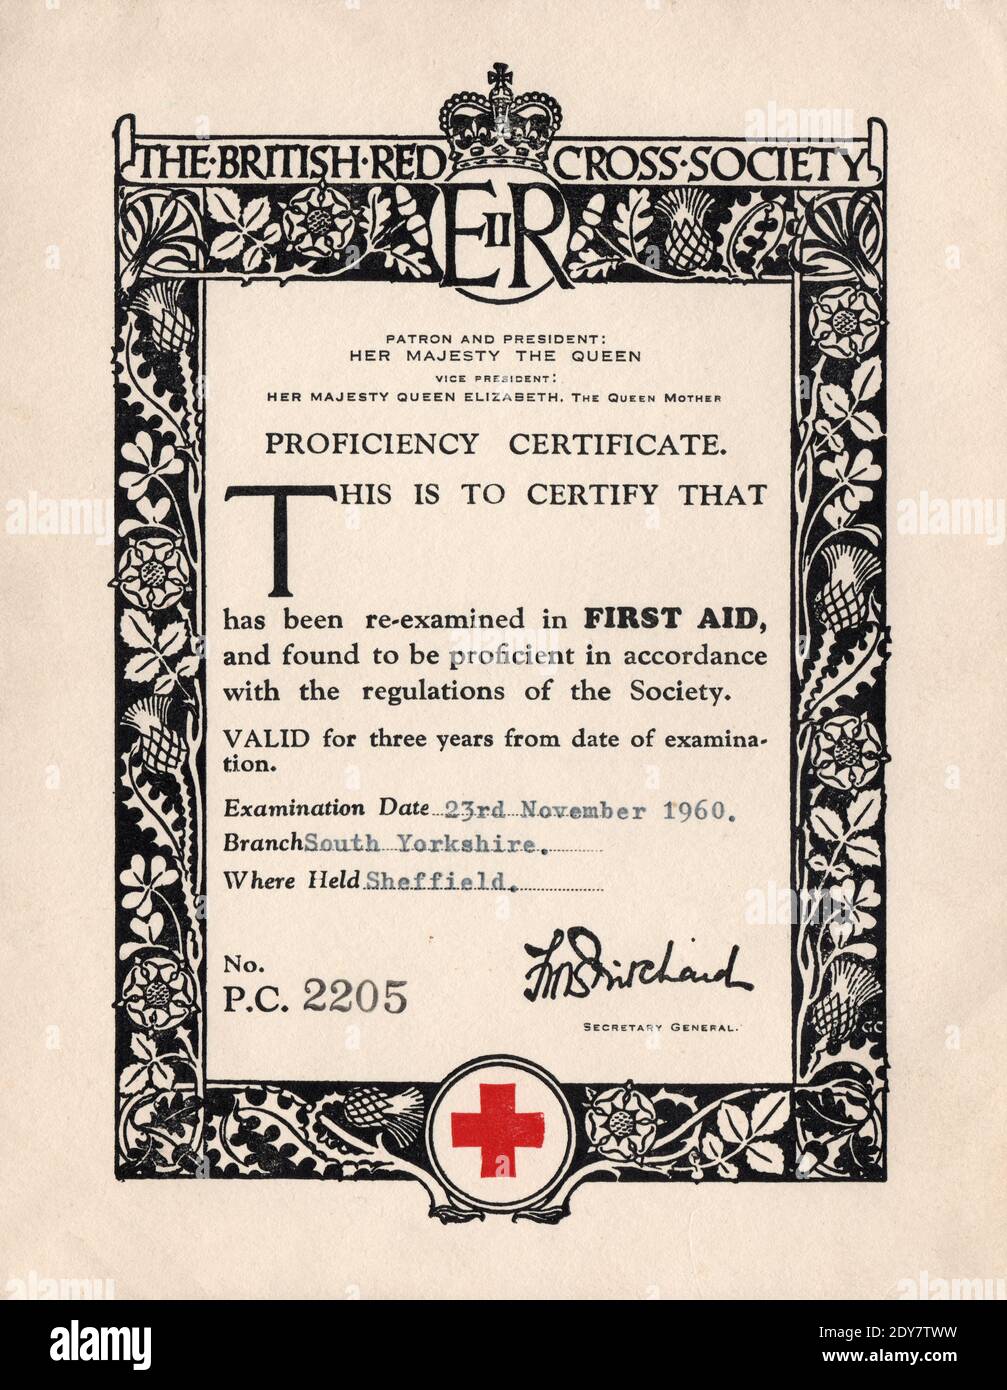 Red Cross Nursing School Diploma 1906